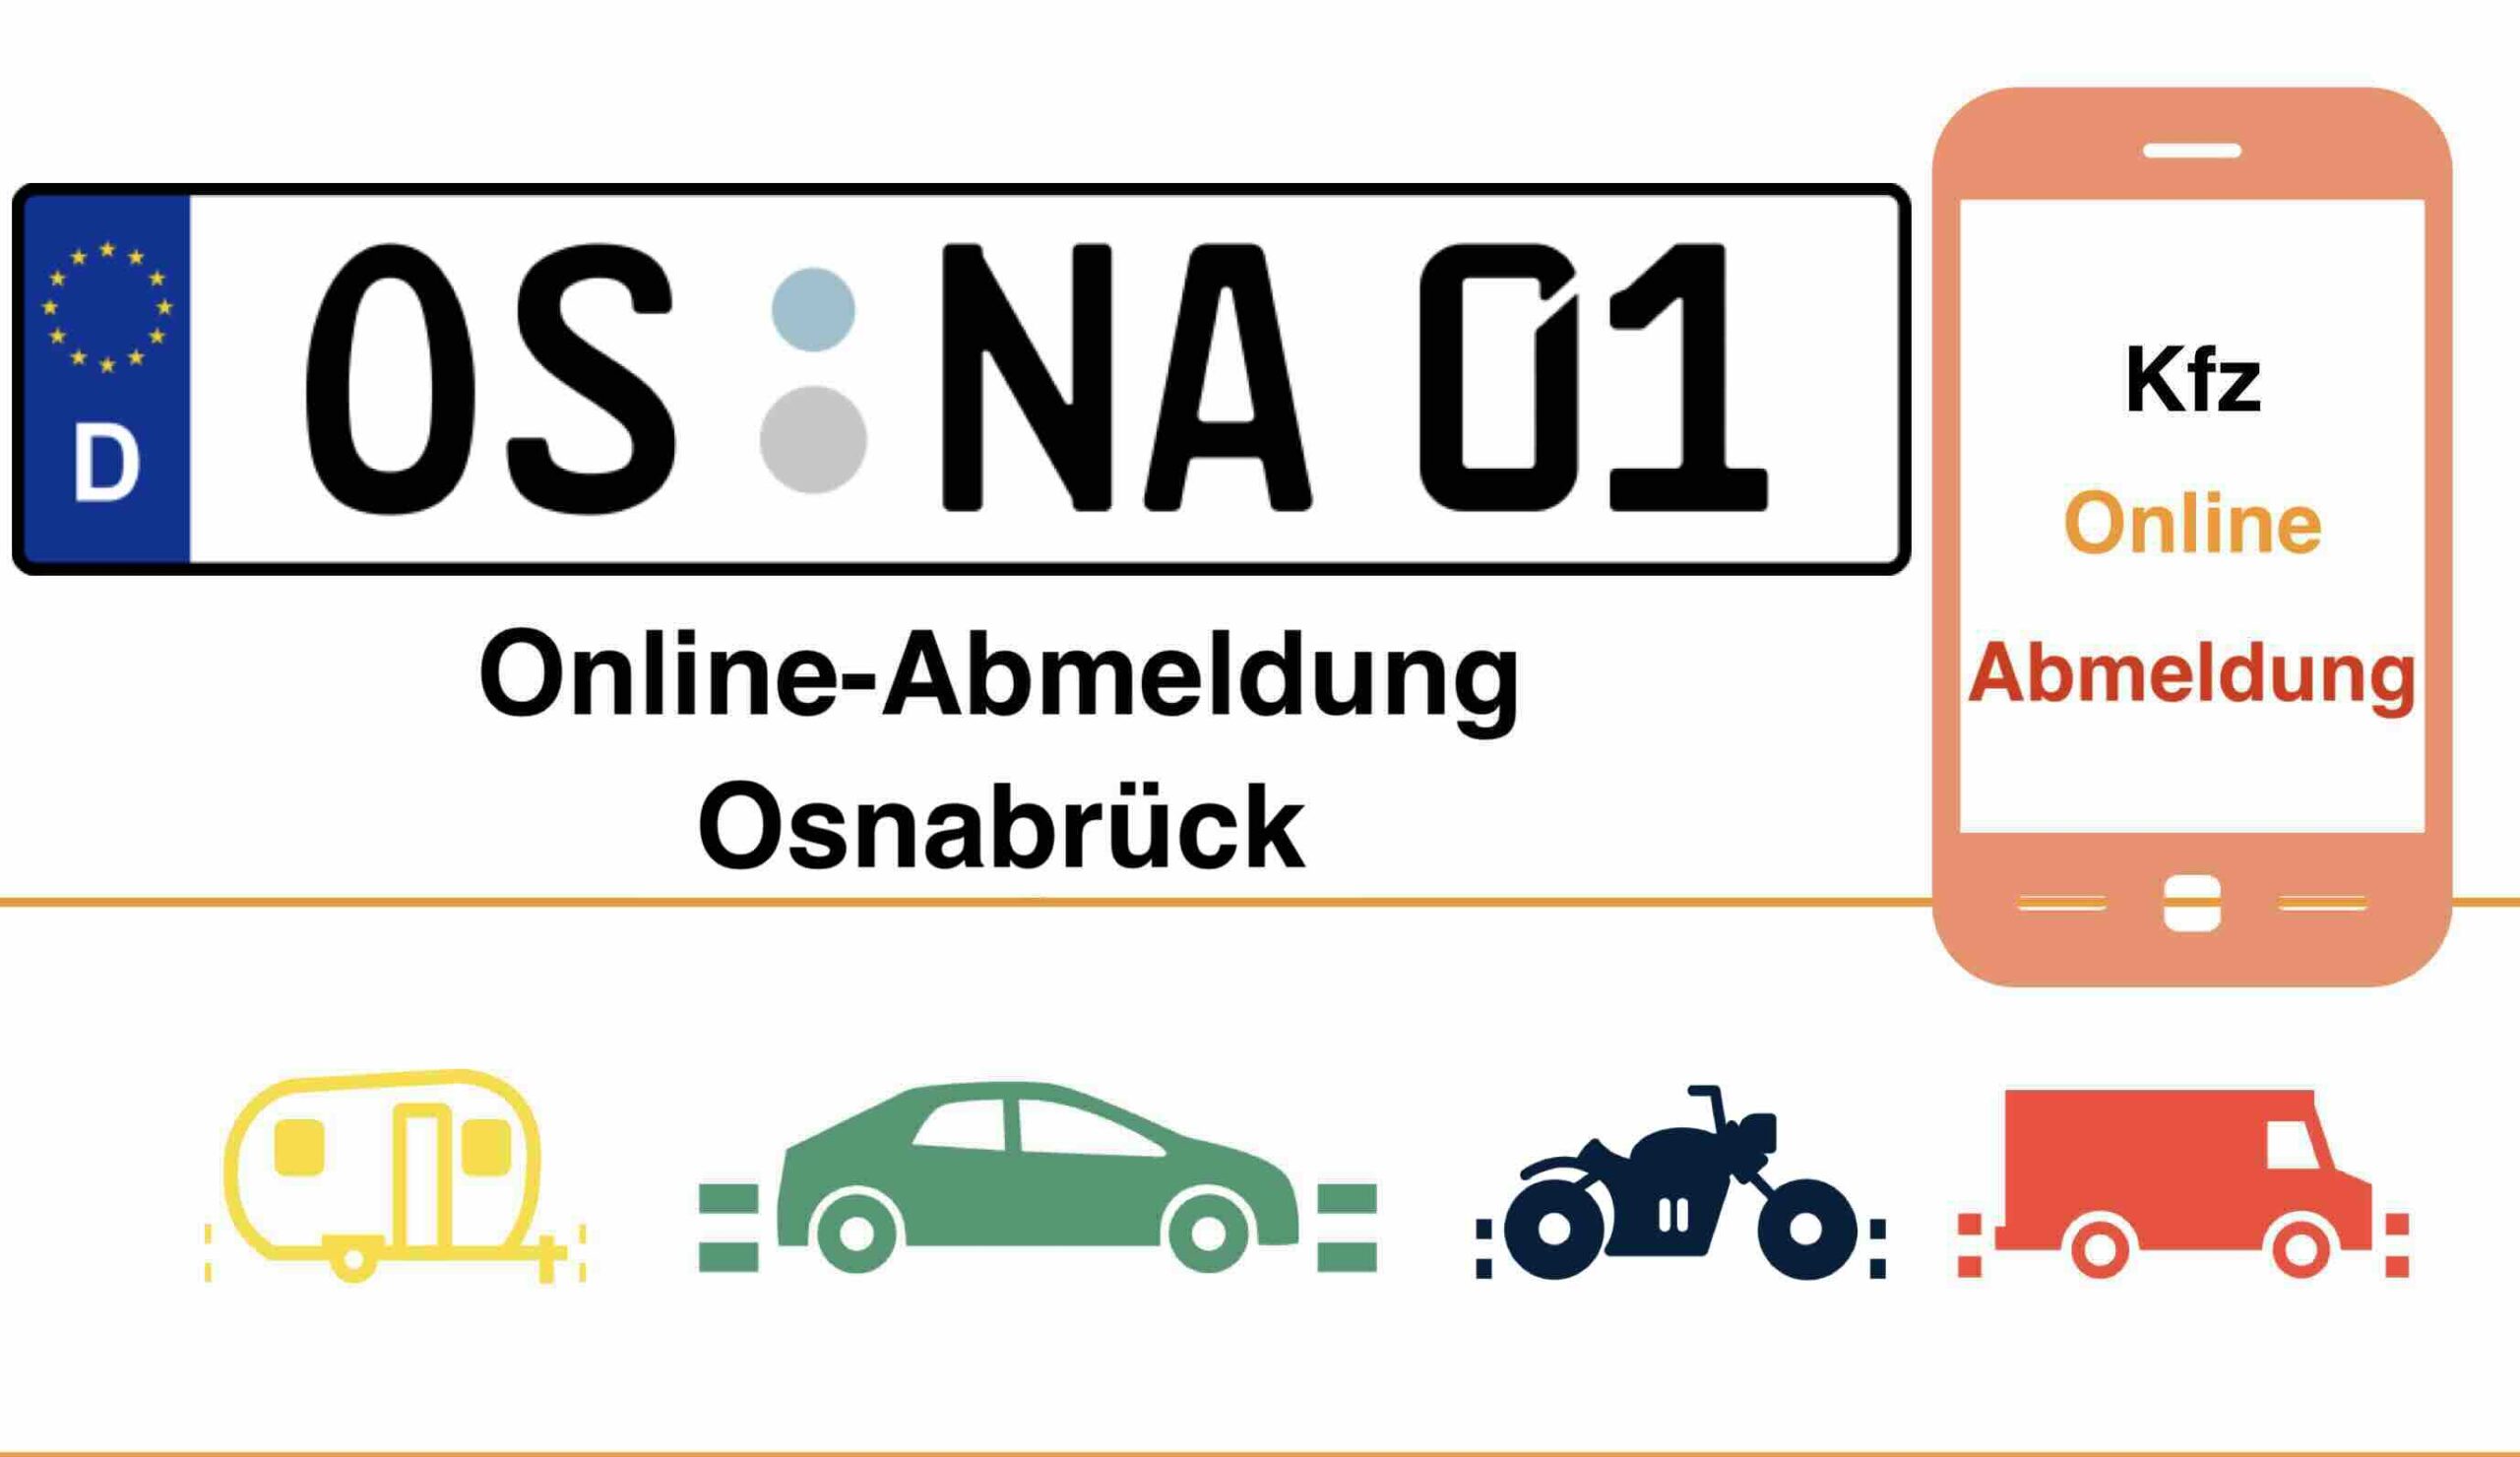 Online-Abmeldung in Osnabrück 